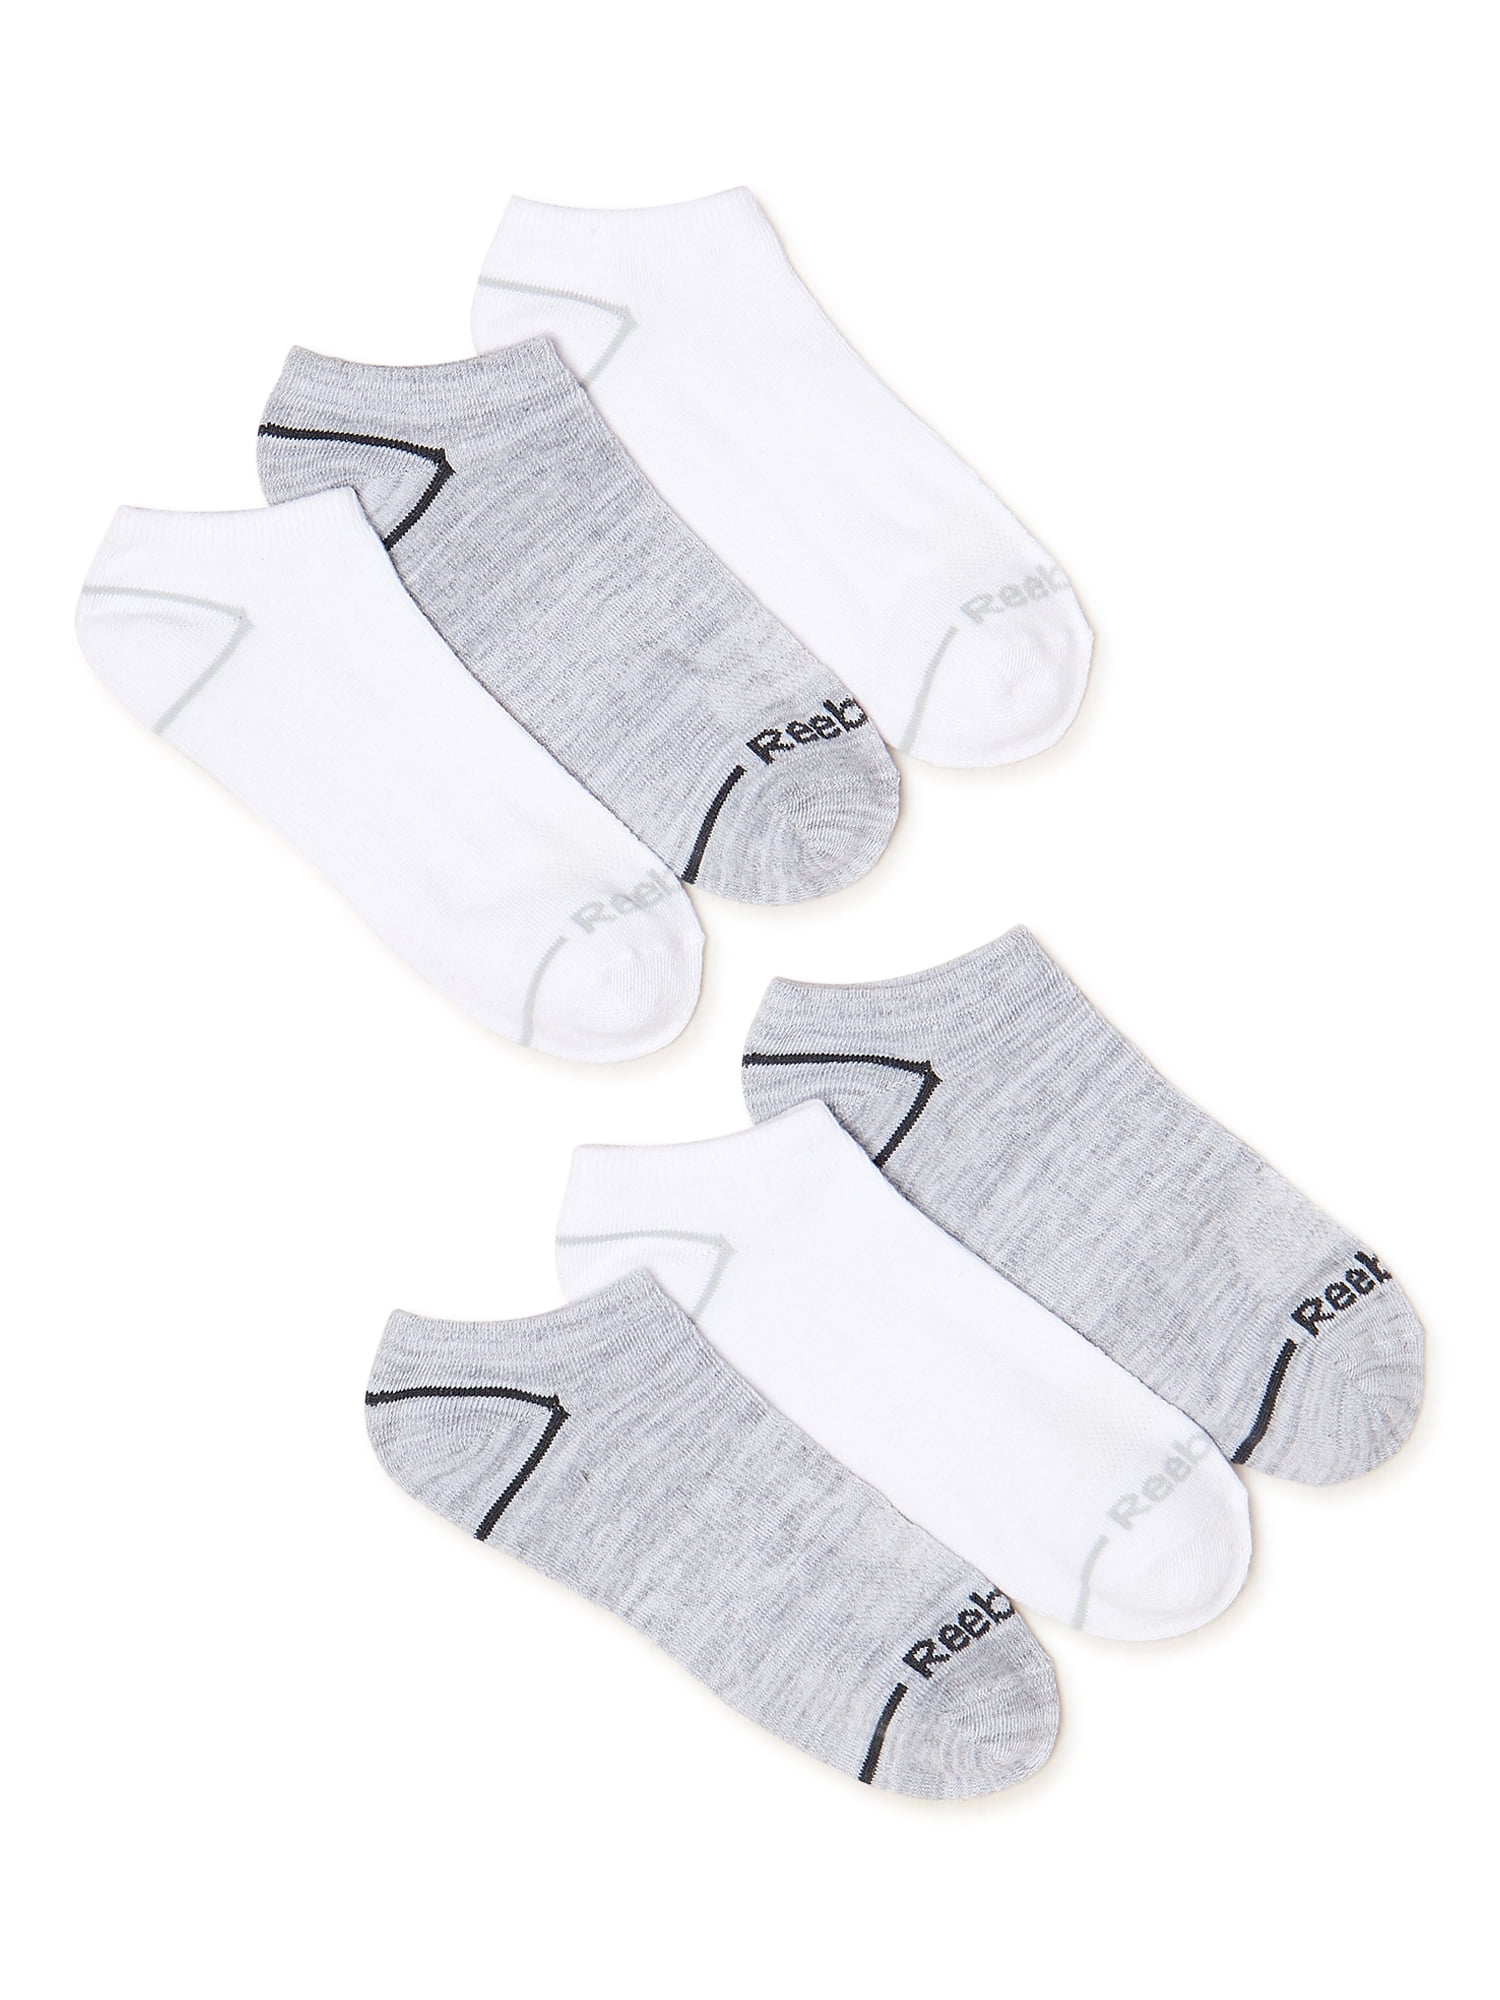 Reebok Men's Pro Series Flatknit Low Cut Socks, 6-Pack